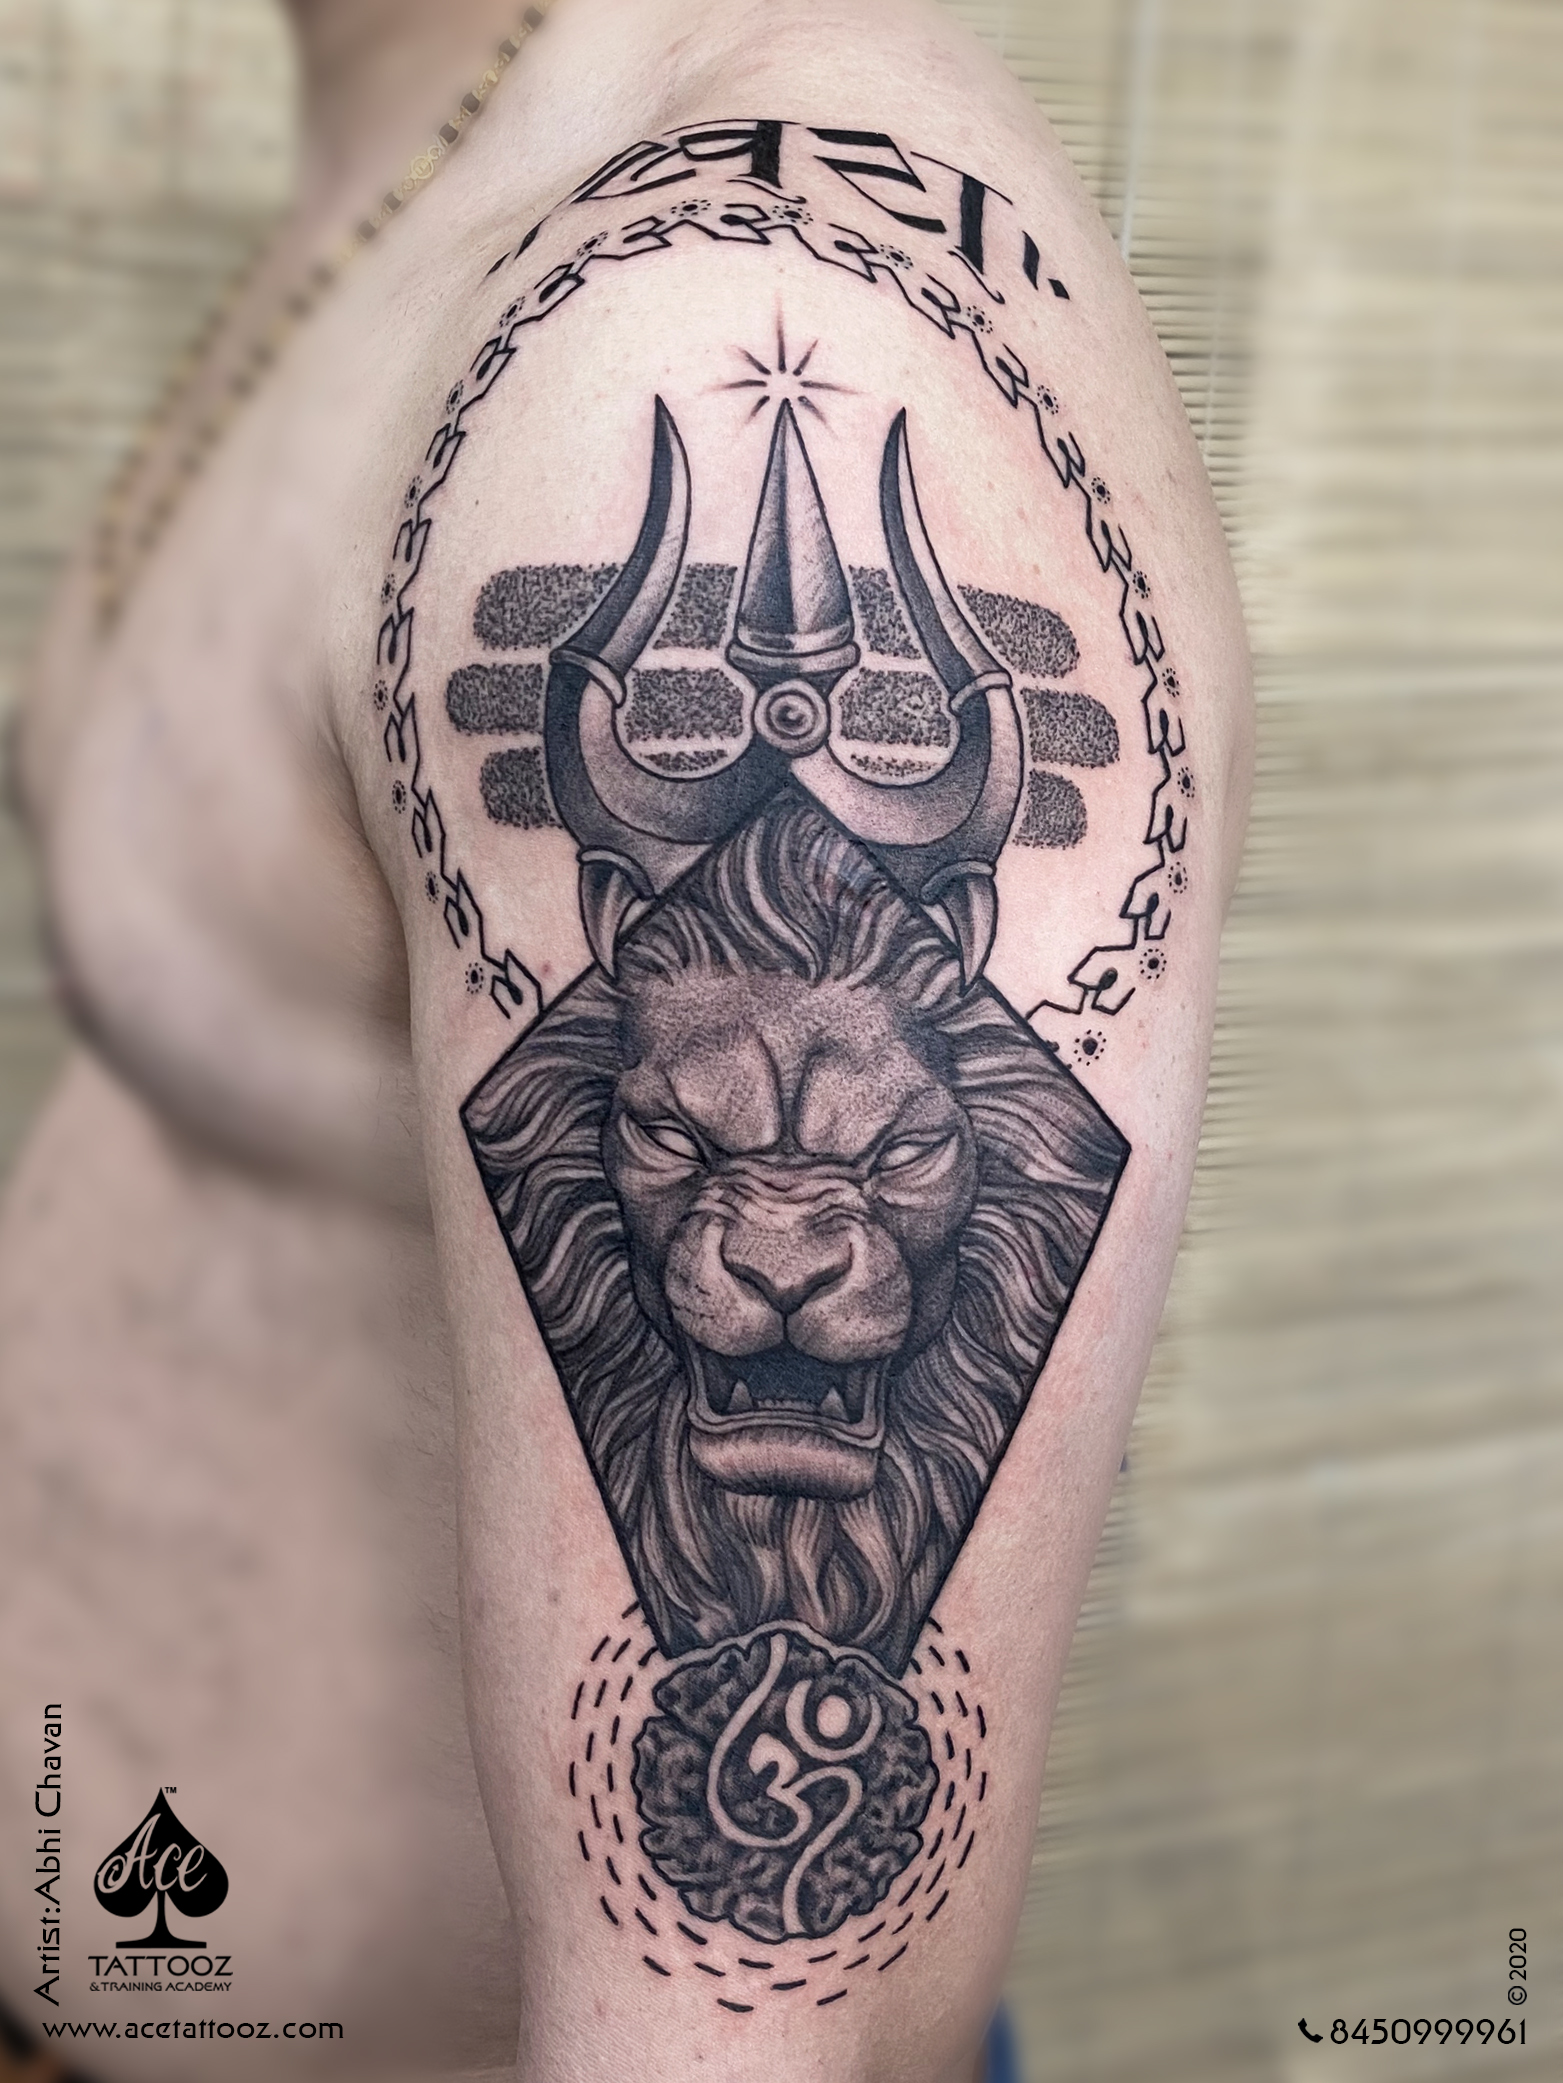 Shiva Tattoo: The Destroyer of Darkness - Tattoo Shop - Medium